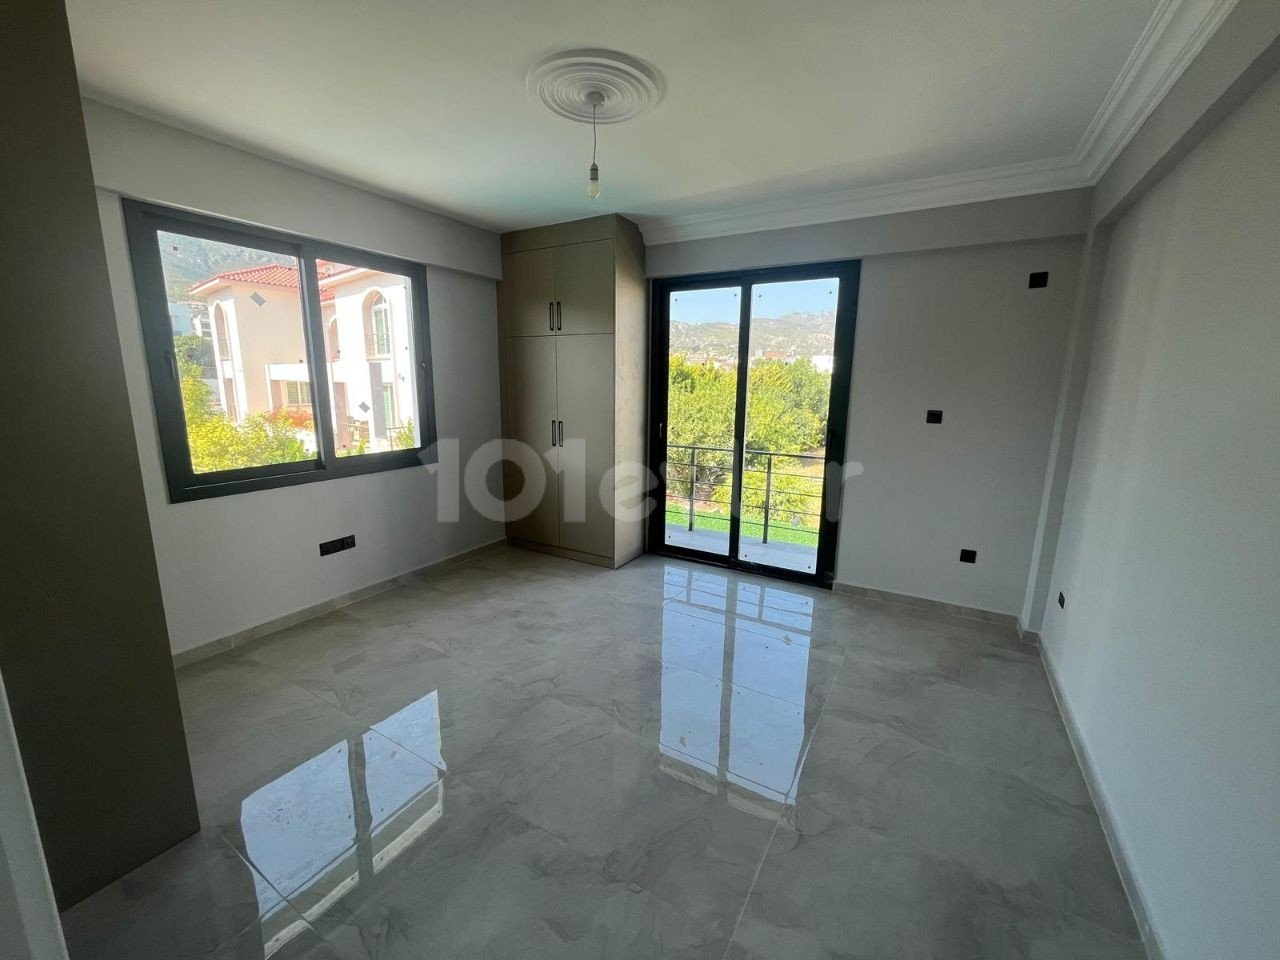 Satılık Villa - Bellapais, Girne, Kuzey Kıbrıs-f241d6ba-299b-4e16-a3c4-f27c3372610f